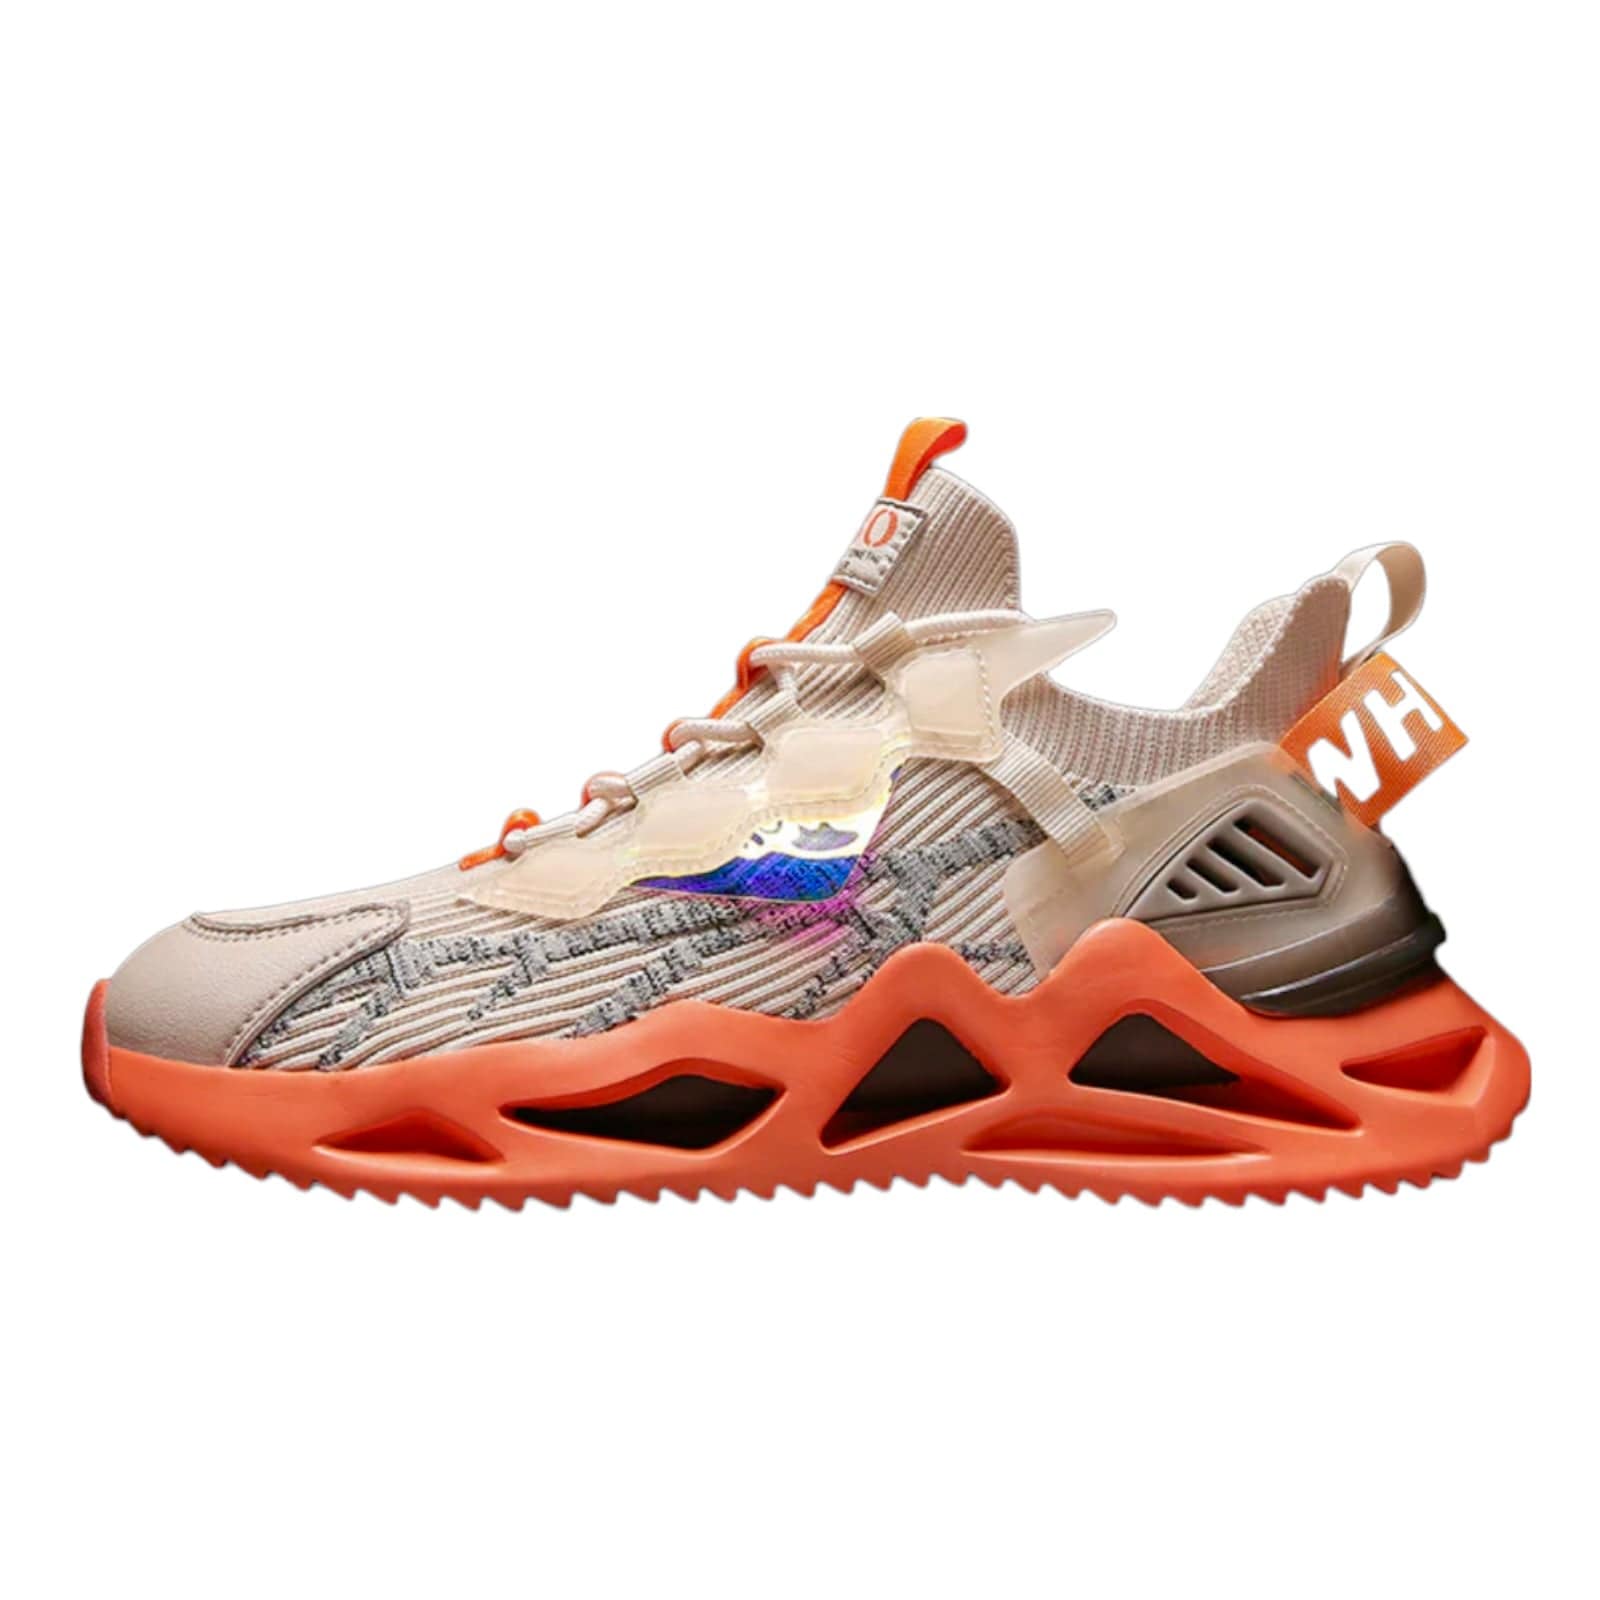 beige sneakers moon x33 flashlander left side orange sole shoes